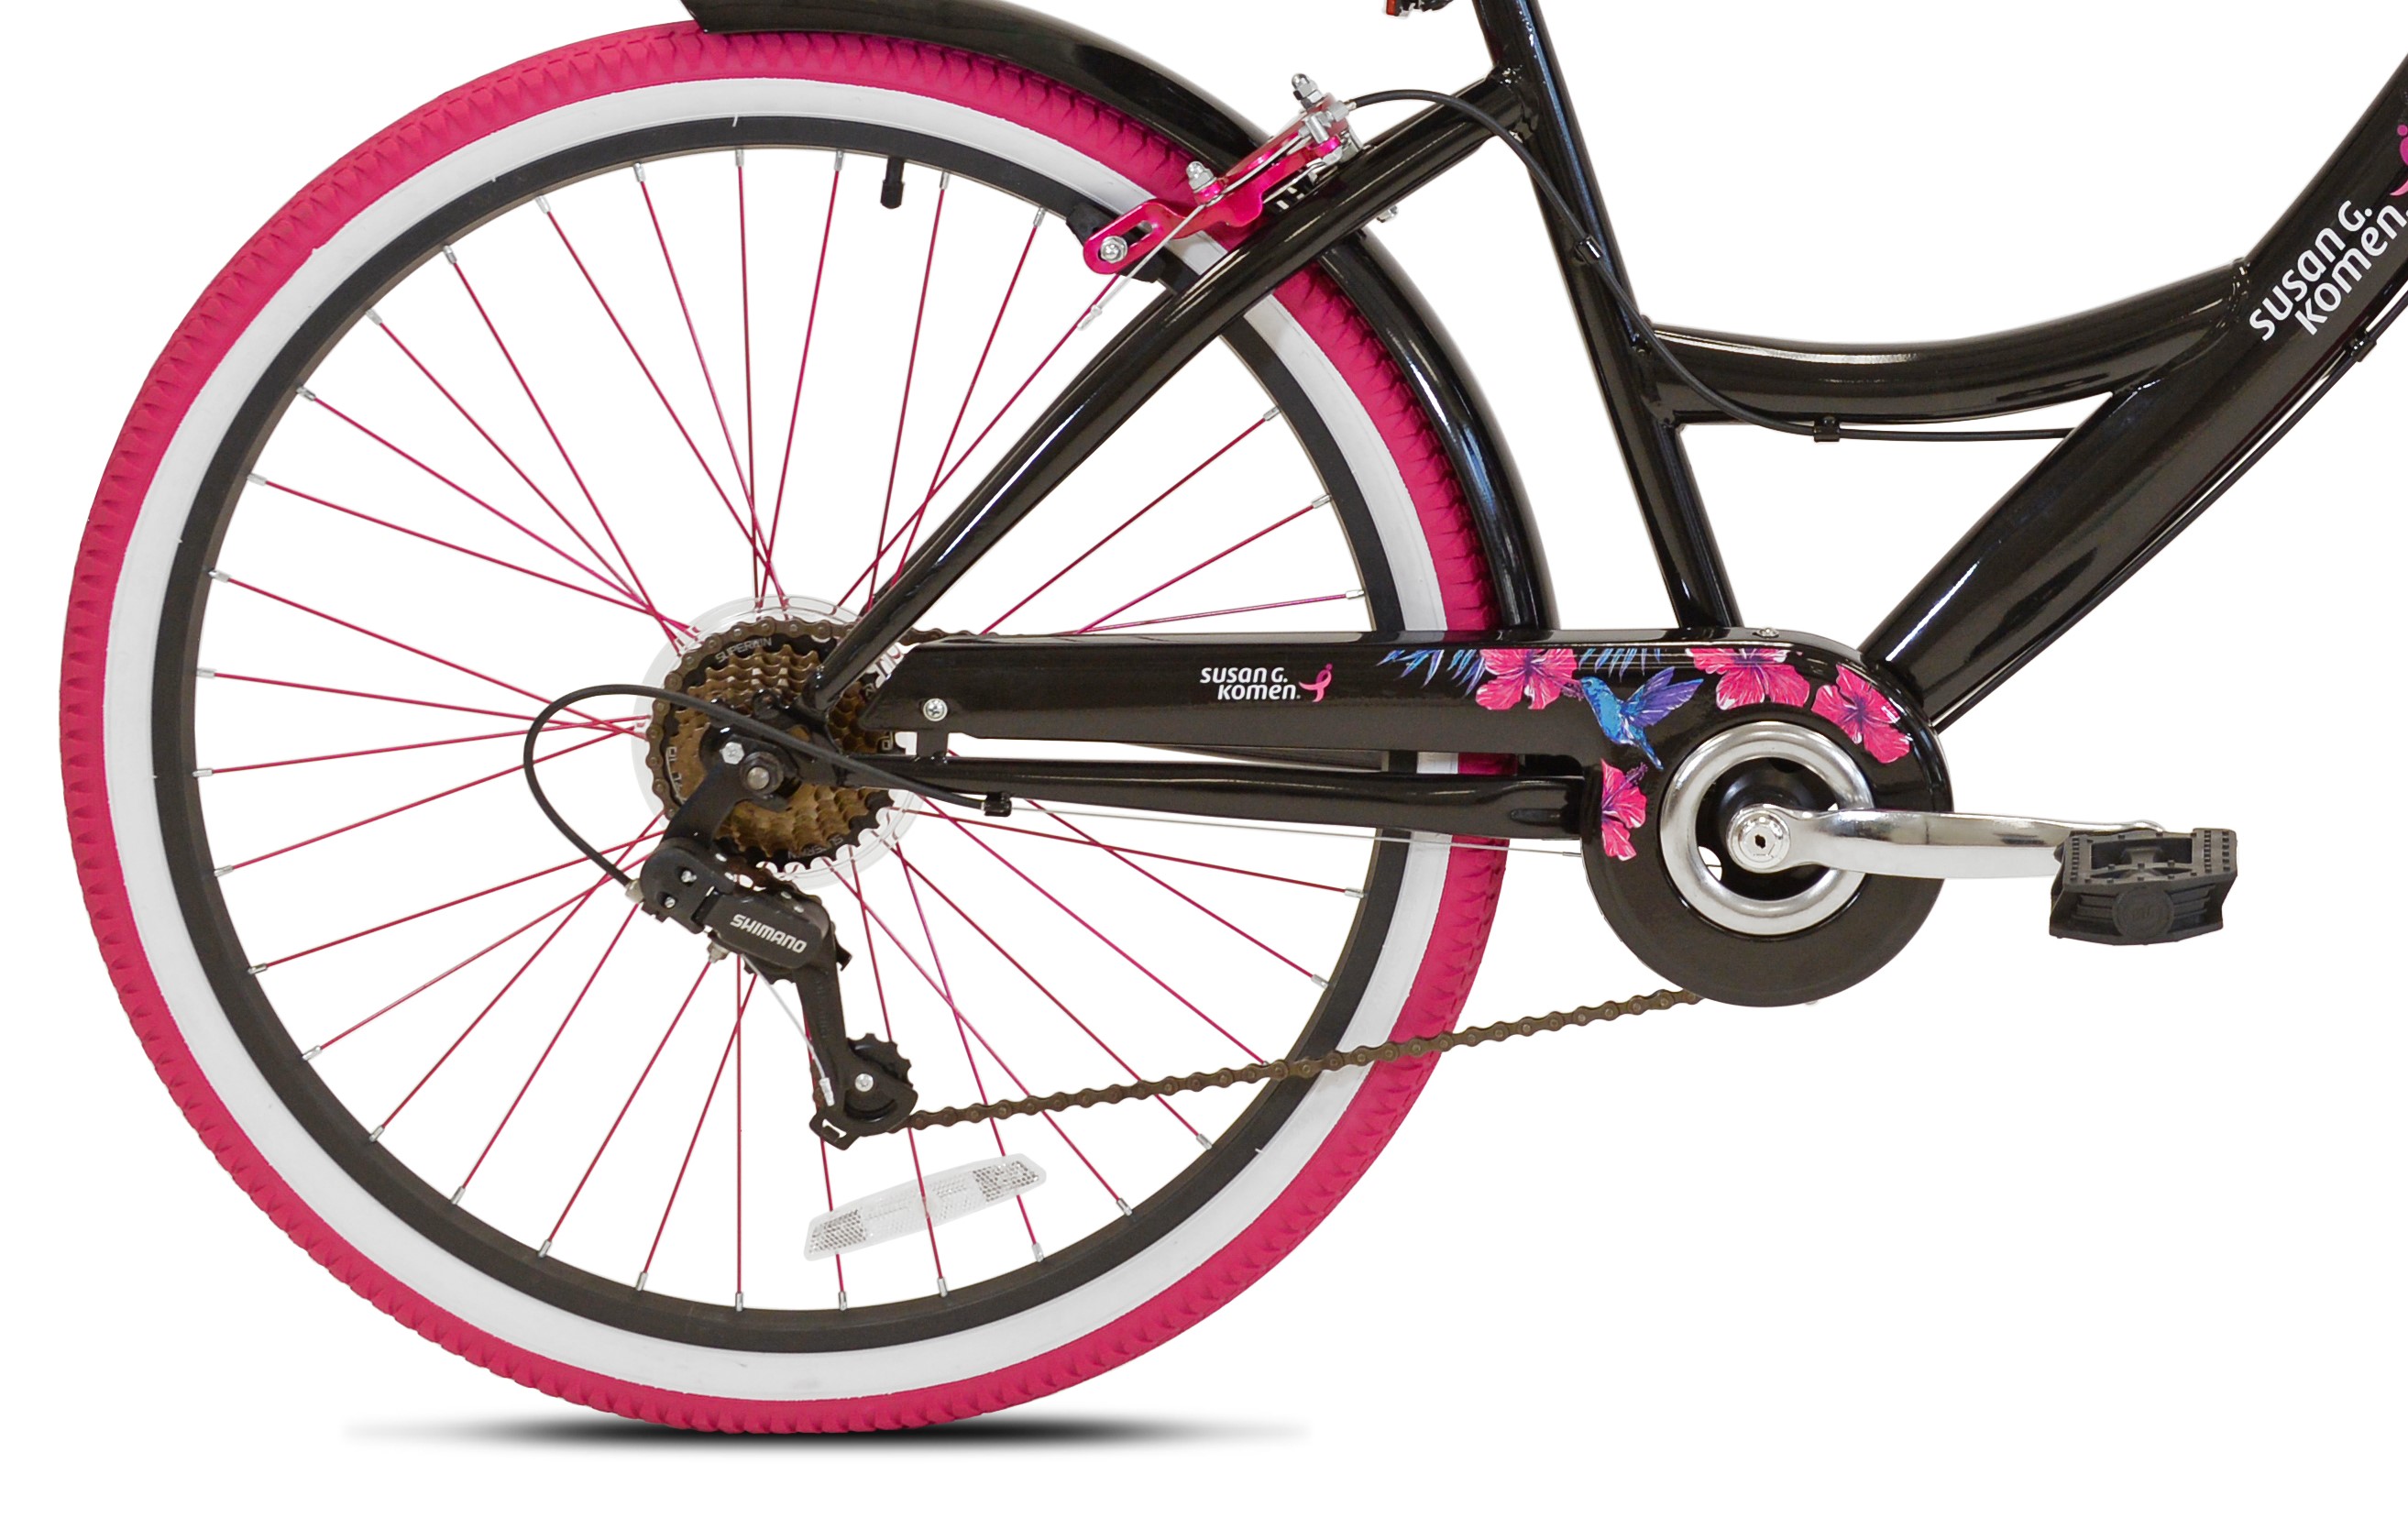 Susan G Komen 26" Women's Cruiser Bike, Black/Pink - image 4 of 10